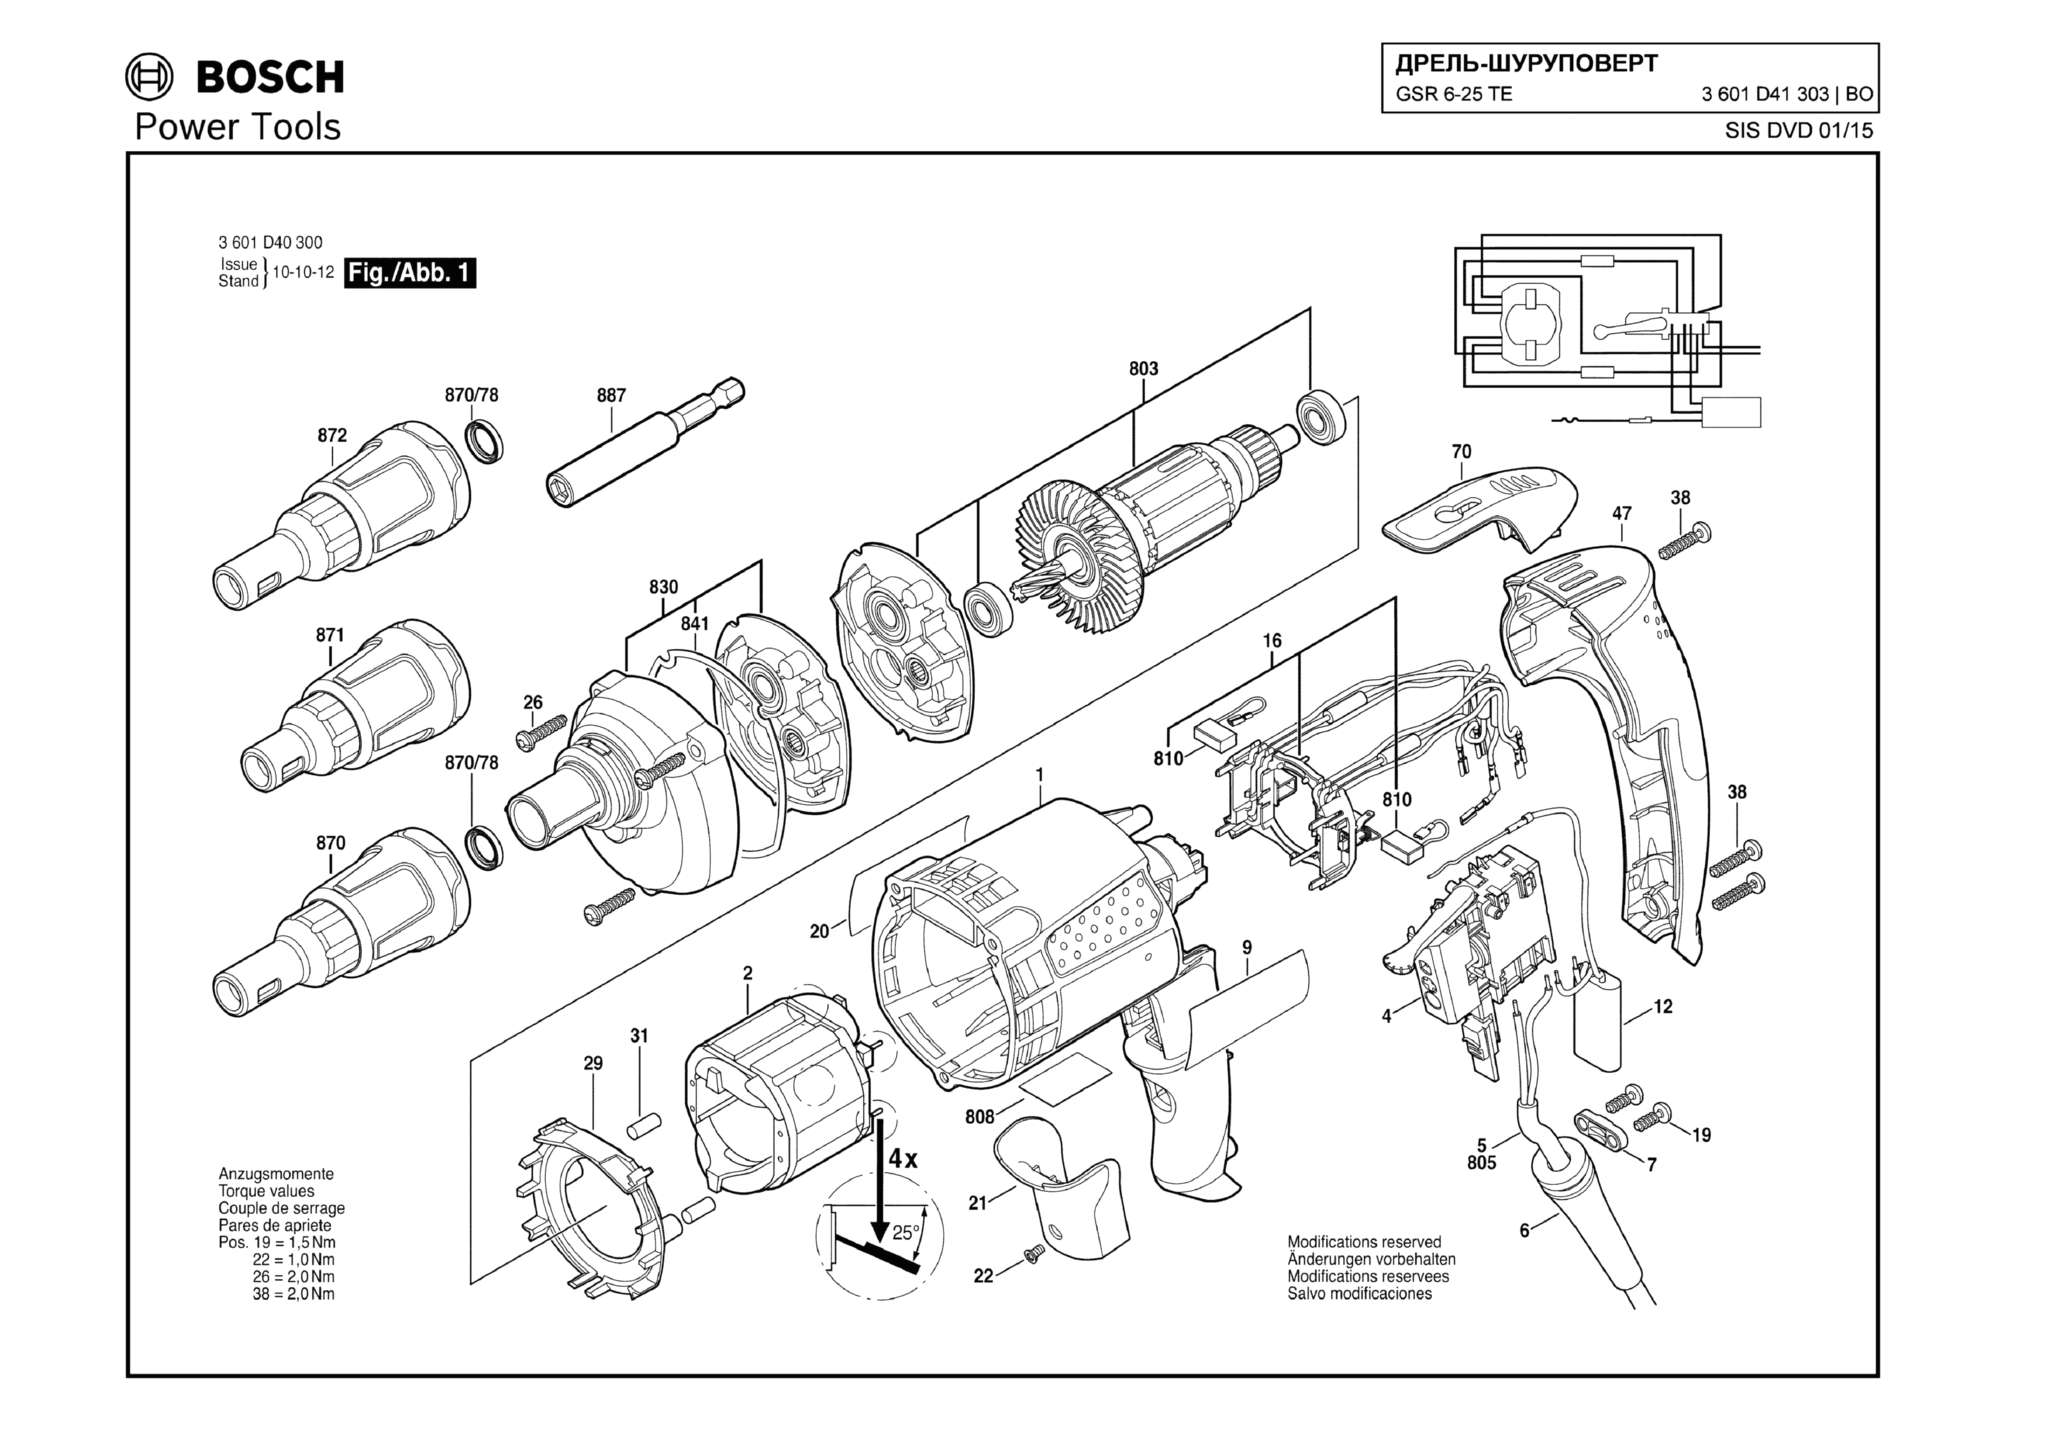 Запчасти, схема и деталировка Bosch GSR 6-25 TE (ТИП 3601D41303)